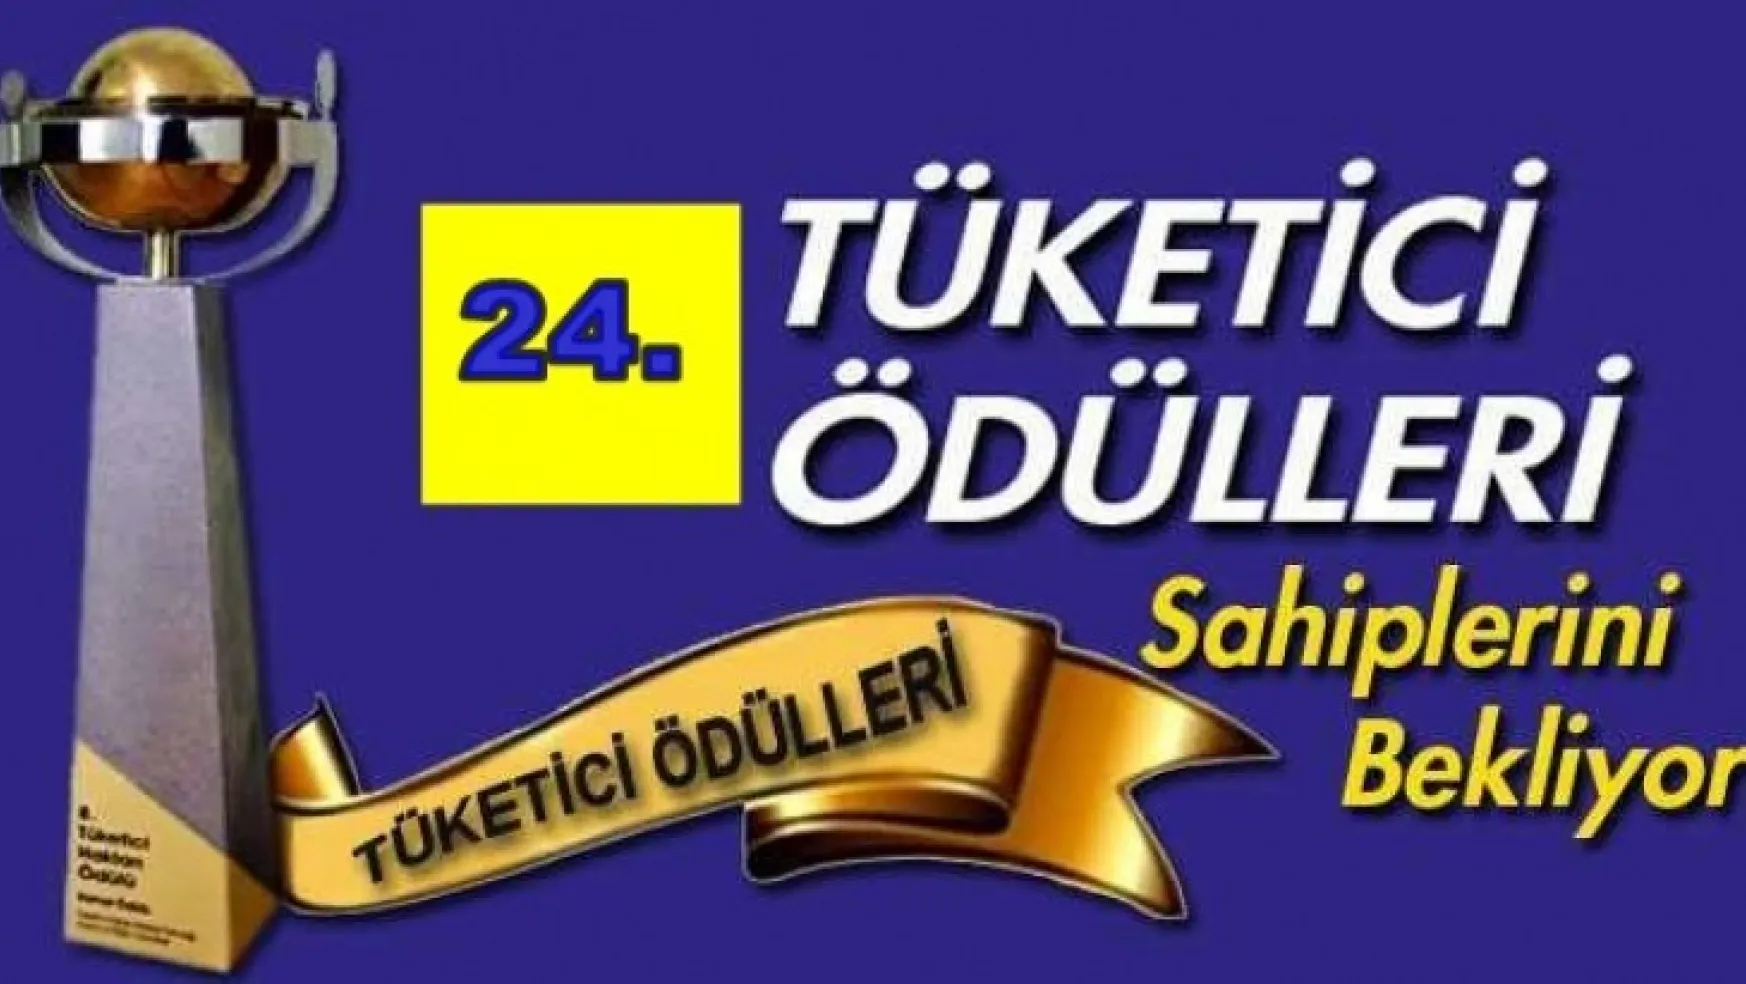 24. Tüketici Ödülleri Sahiplerini Bekliyor.